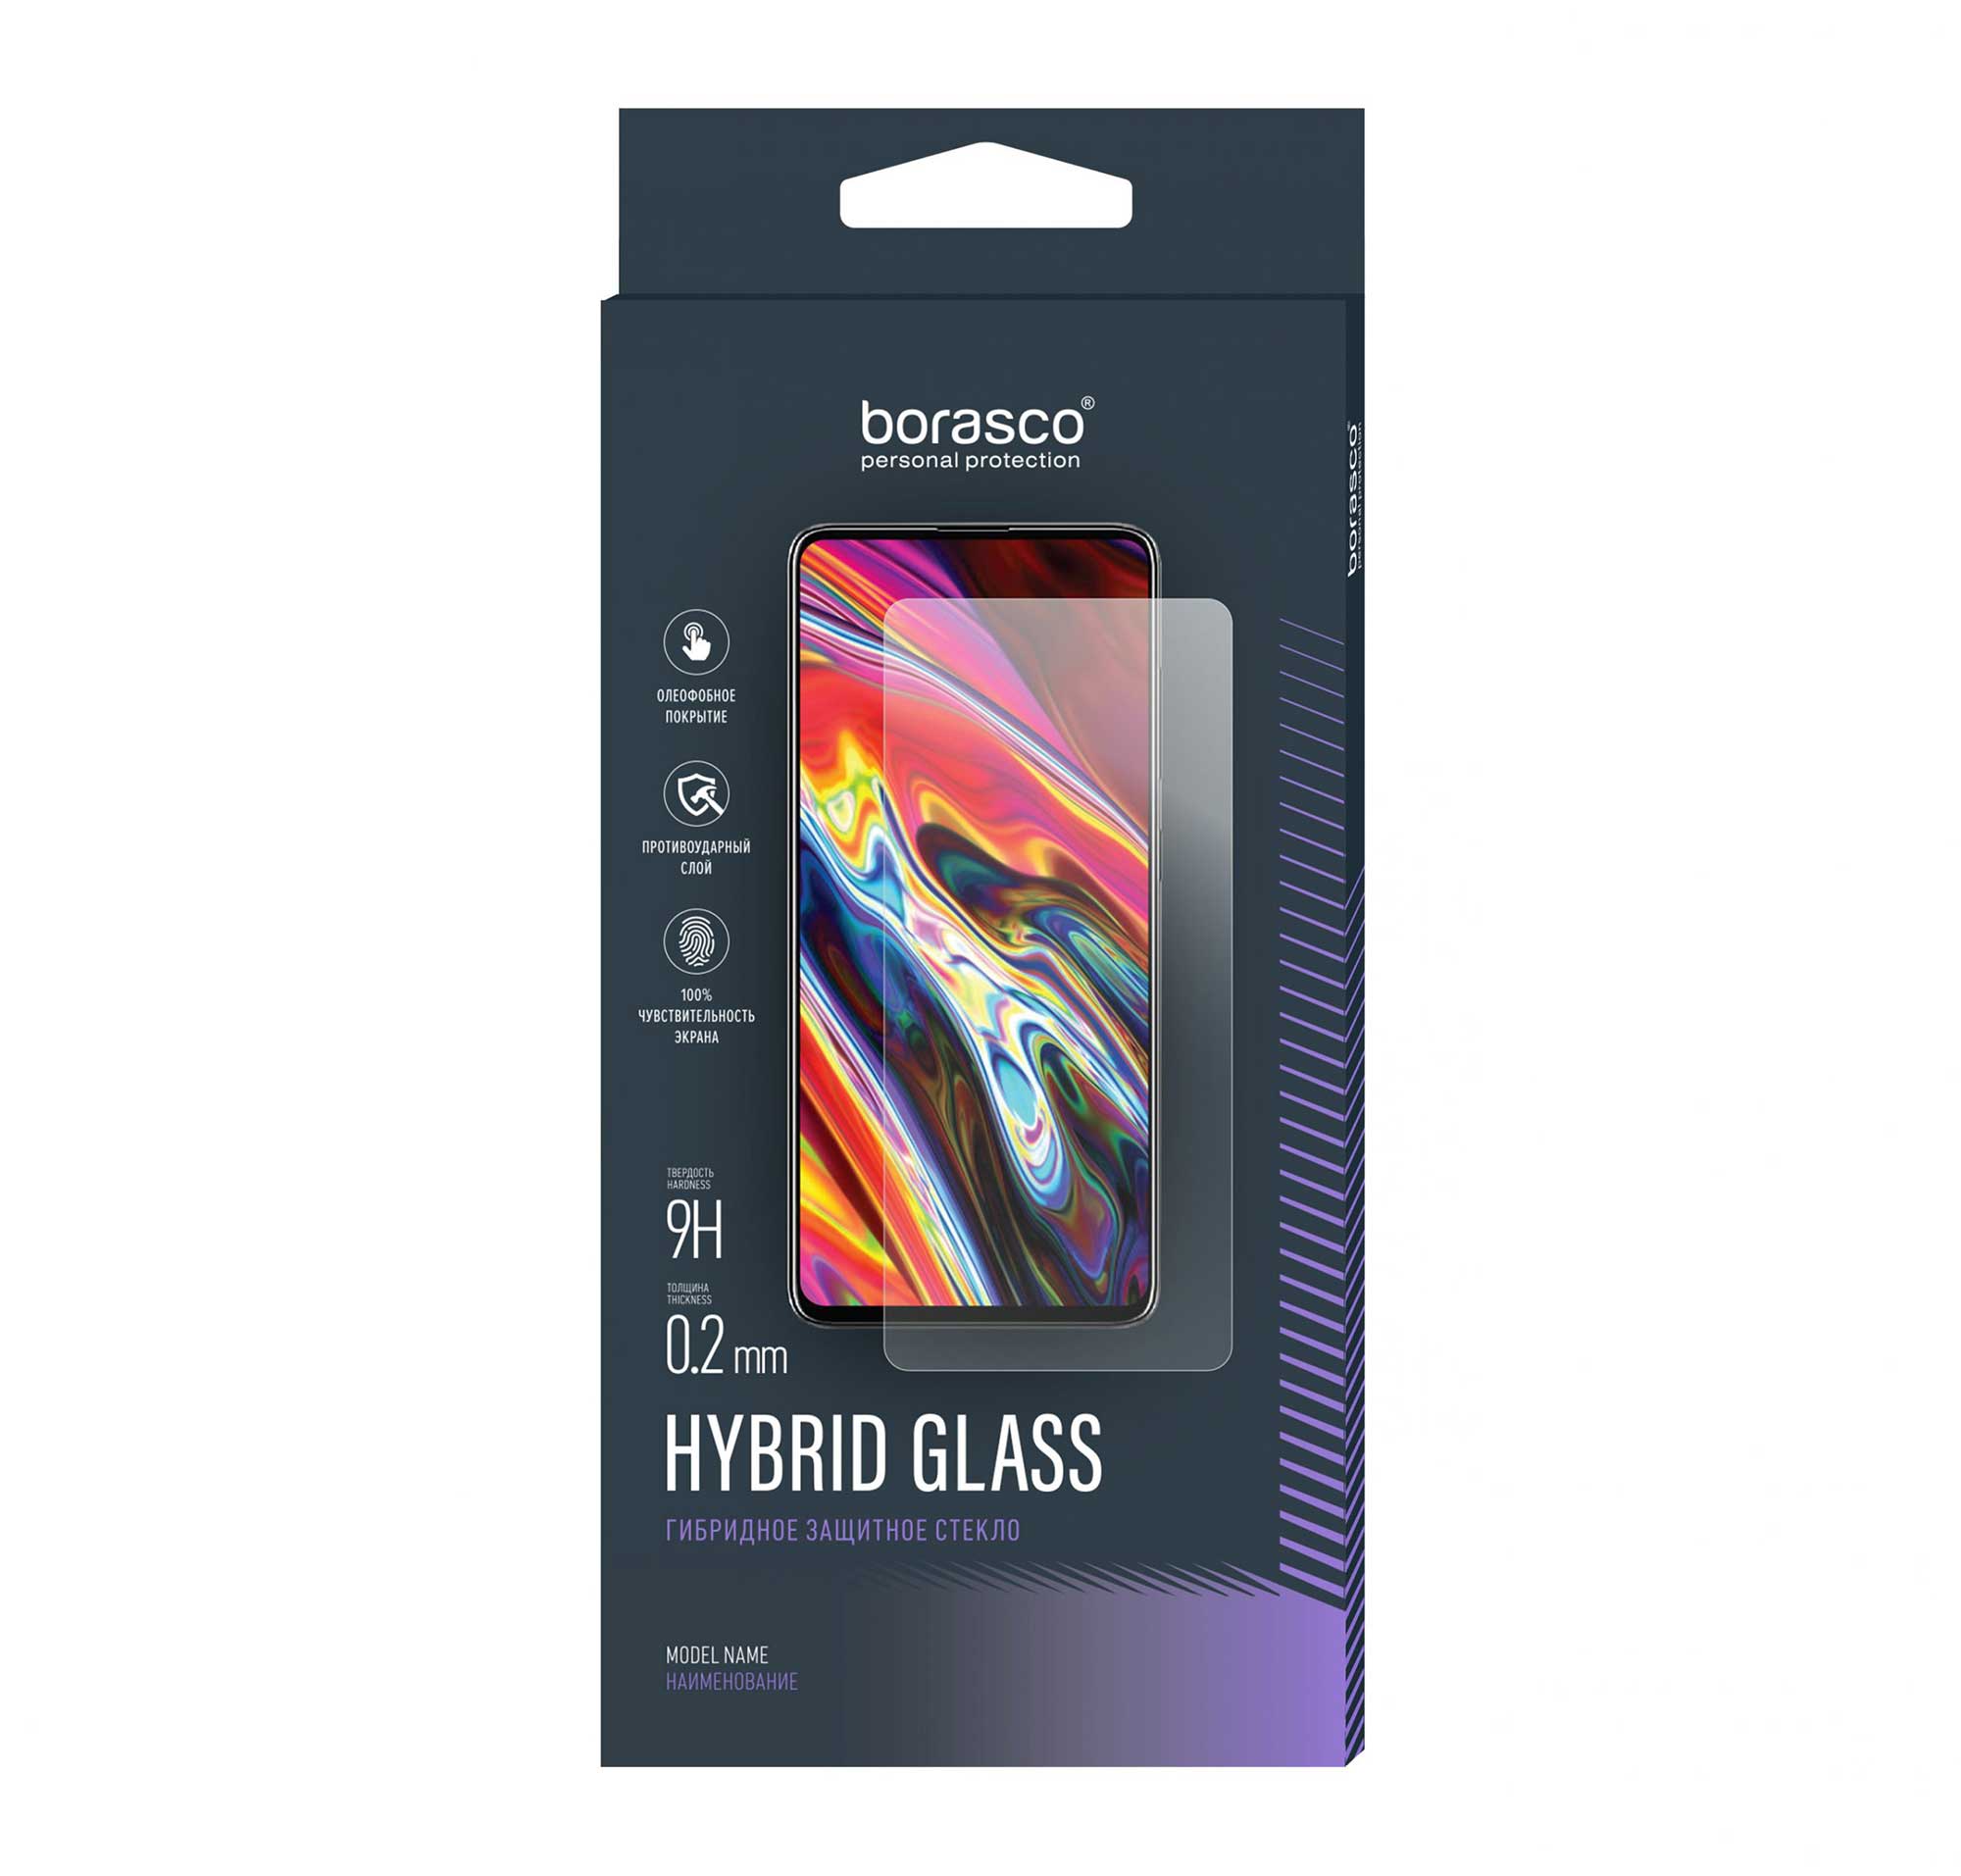 Защитное стекло BoraSCO Hybrid Glass для OPPO A12 гибкая керамическая матовая пленка стекло mobix для realme 3 vivo y90 y91 y93 y95 oppo a12 2020 a7 a5s